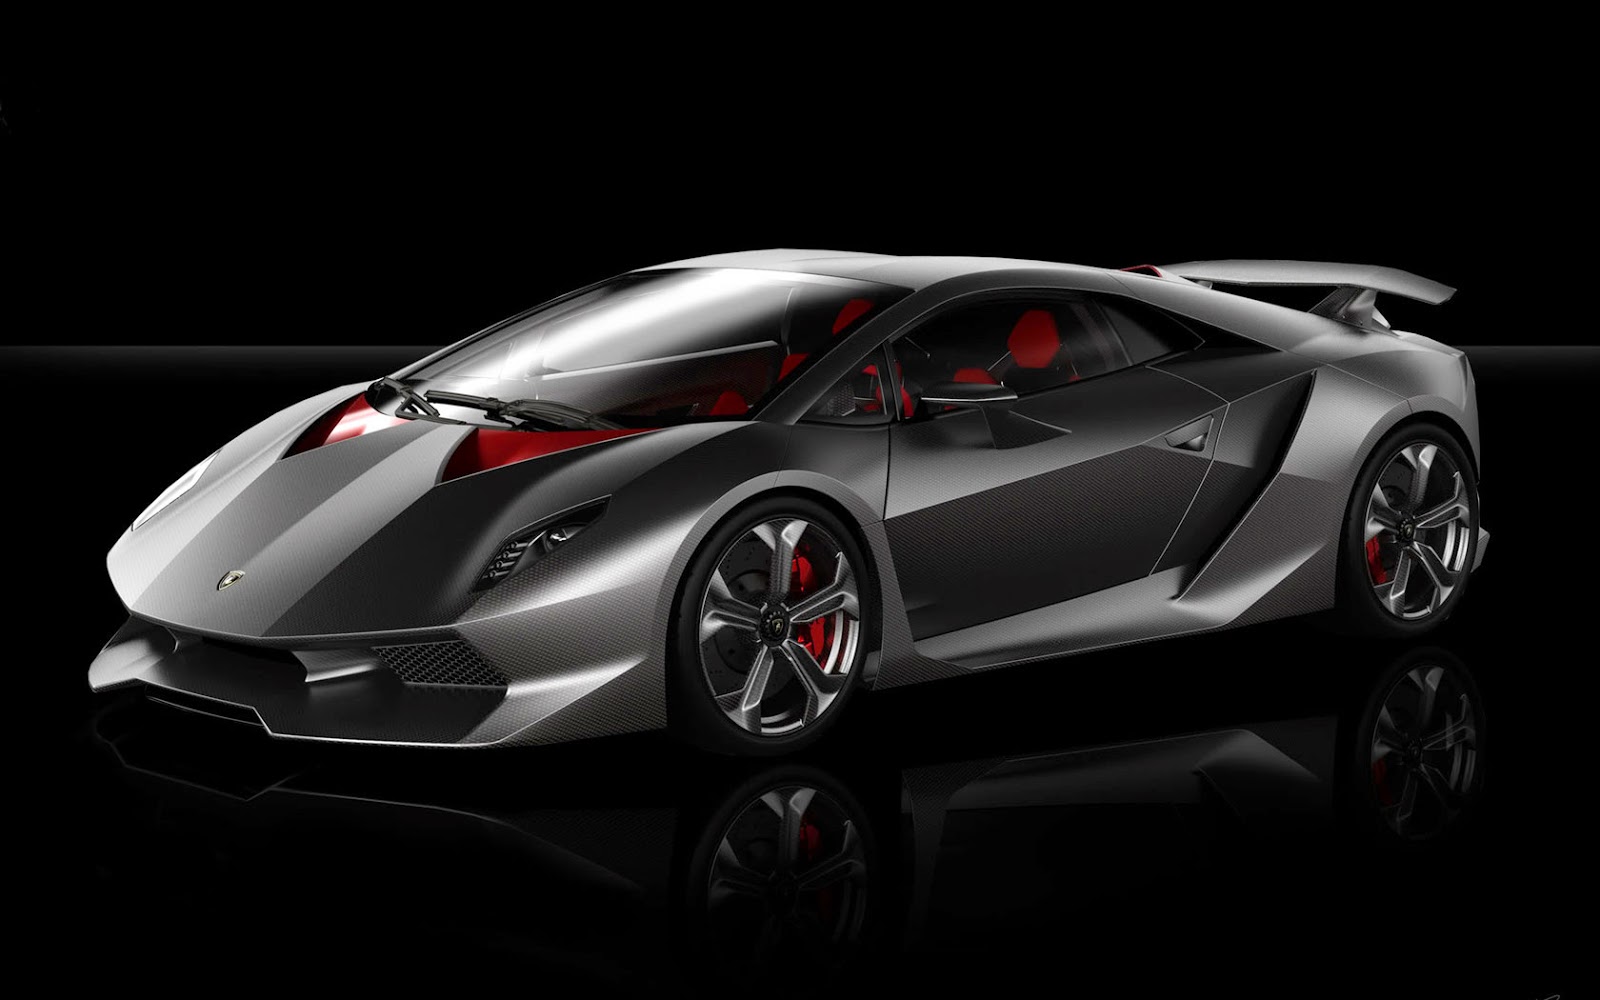 Inside Black Car : 2011 Lamborghini Sesto Elemento